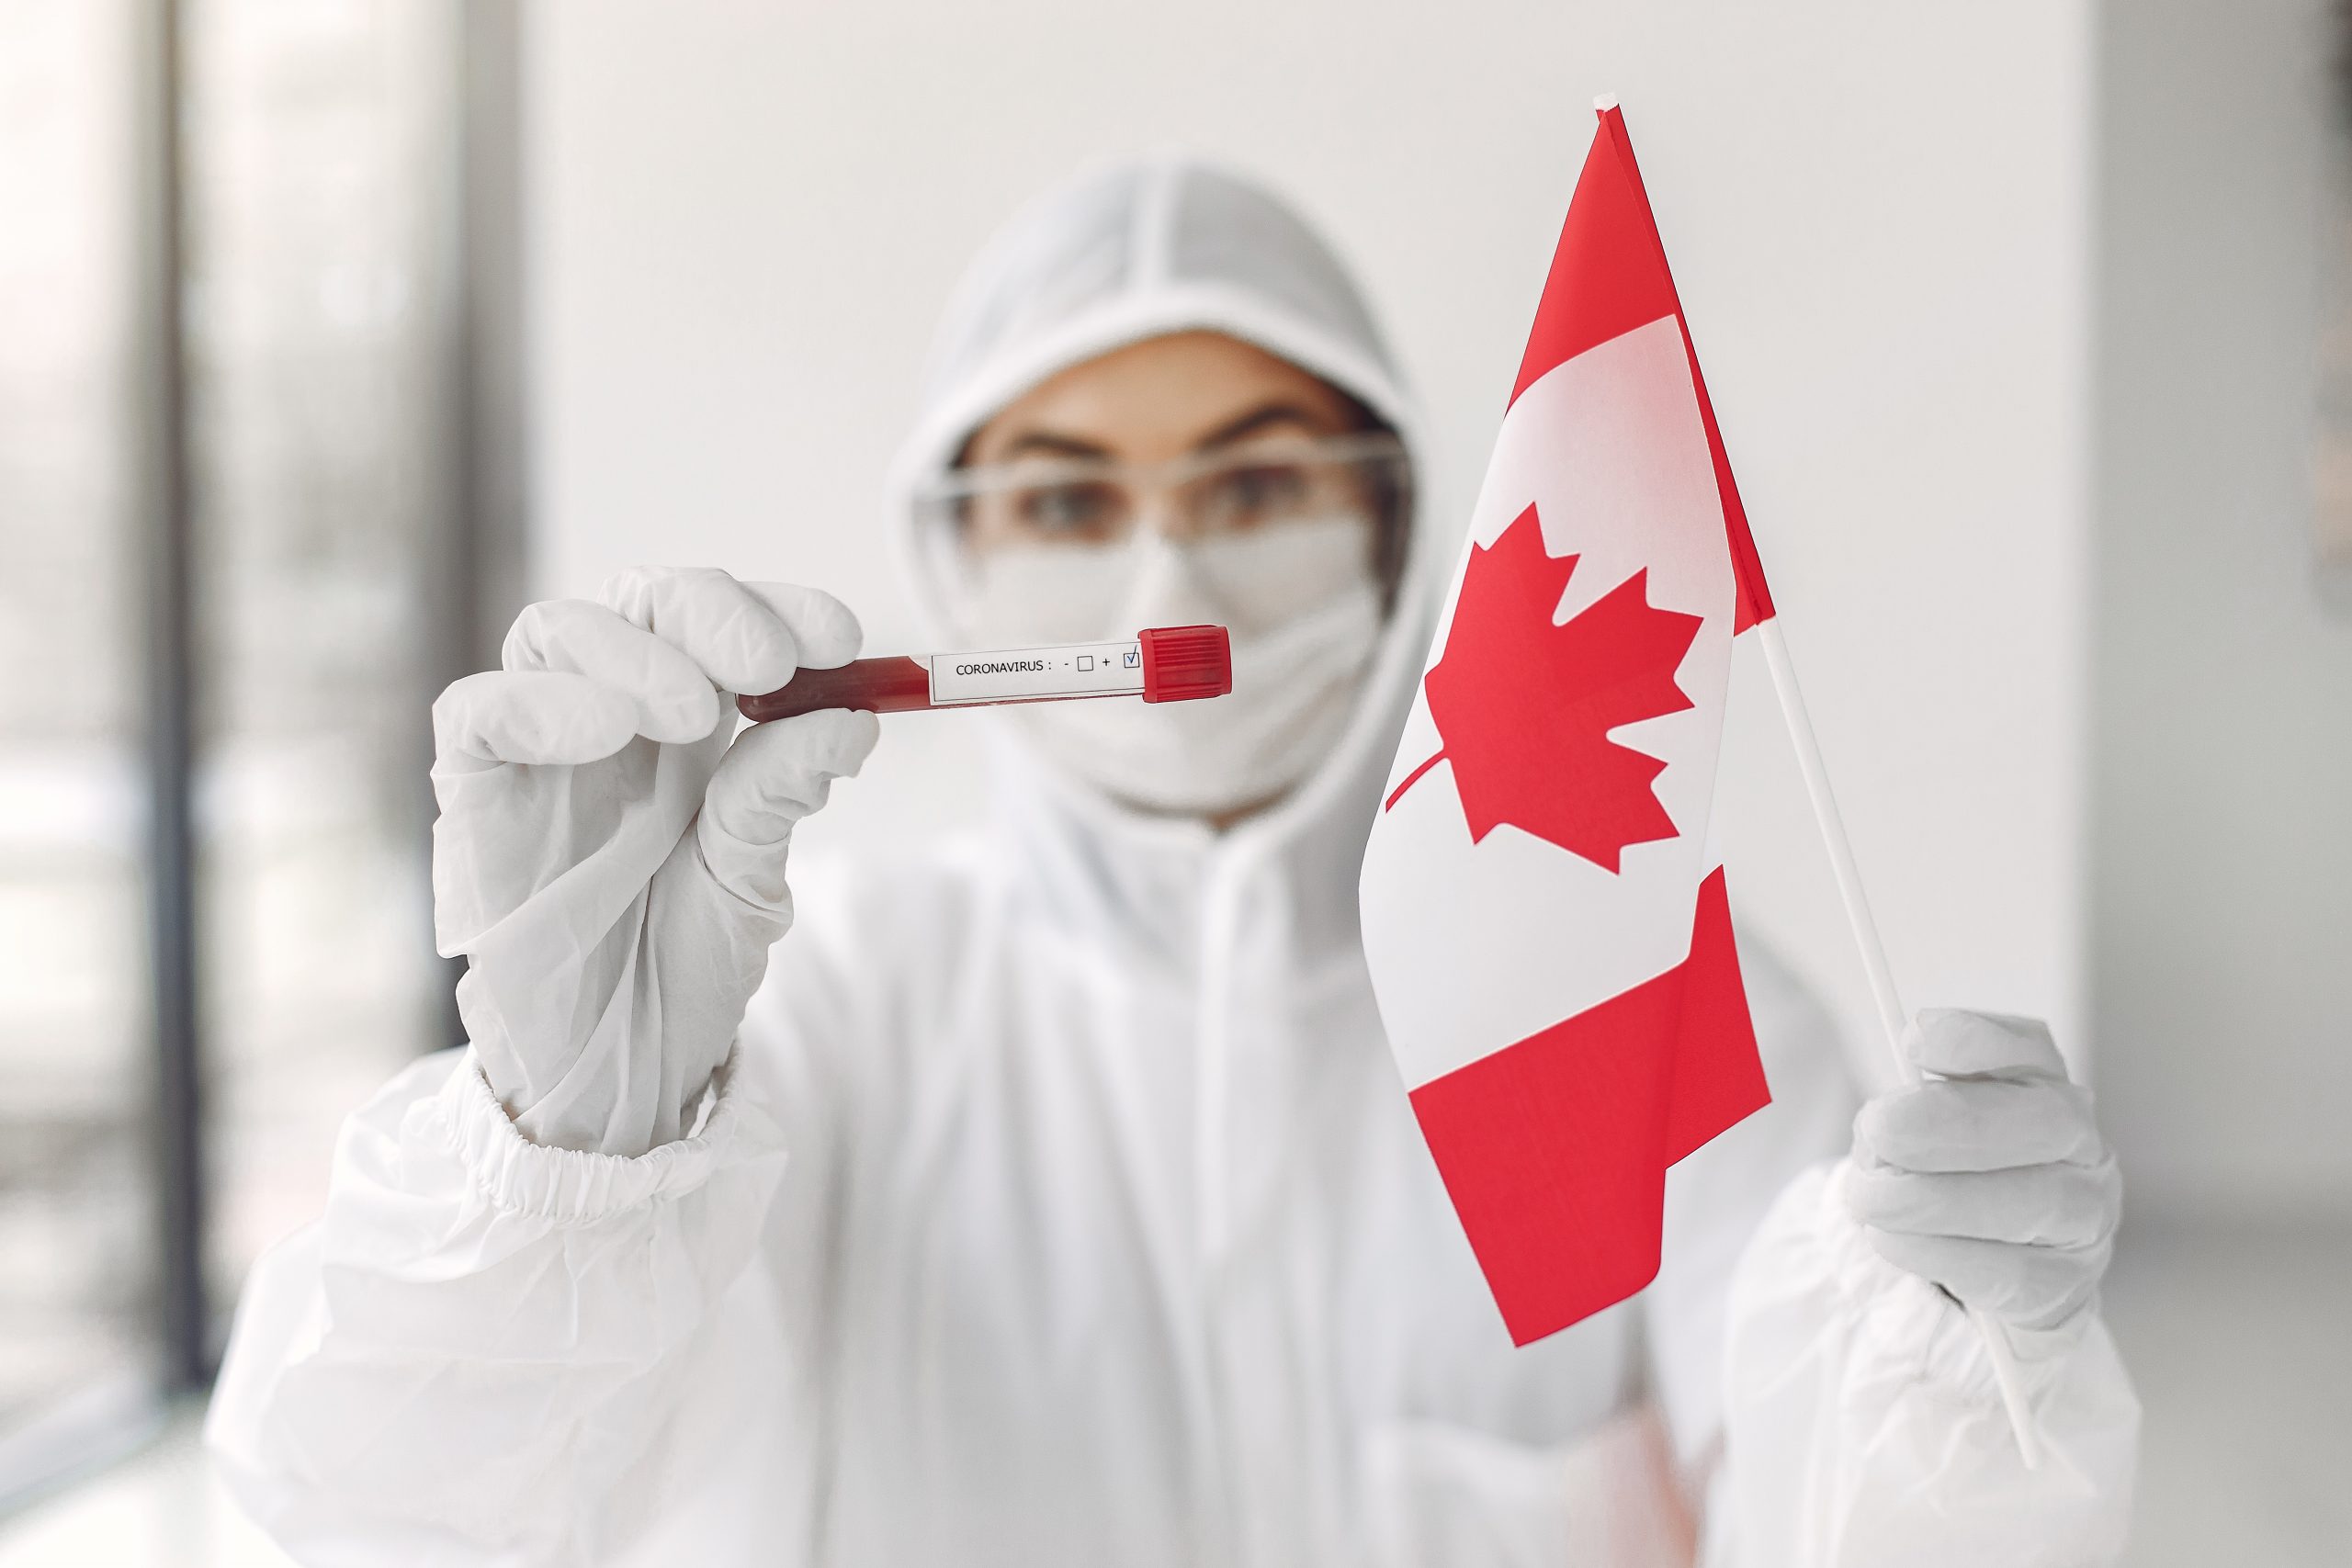 TTXVN – Canada dỡ bỏ các biện pháp hạn chế liên quan COVID-19 tại biên giới từ 1/10